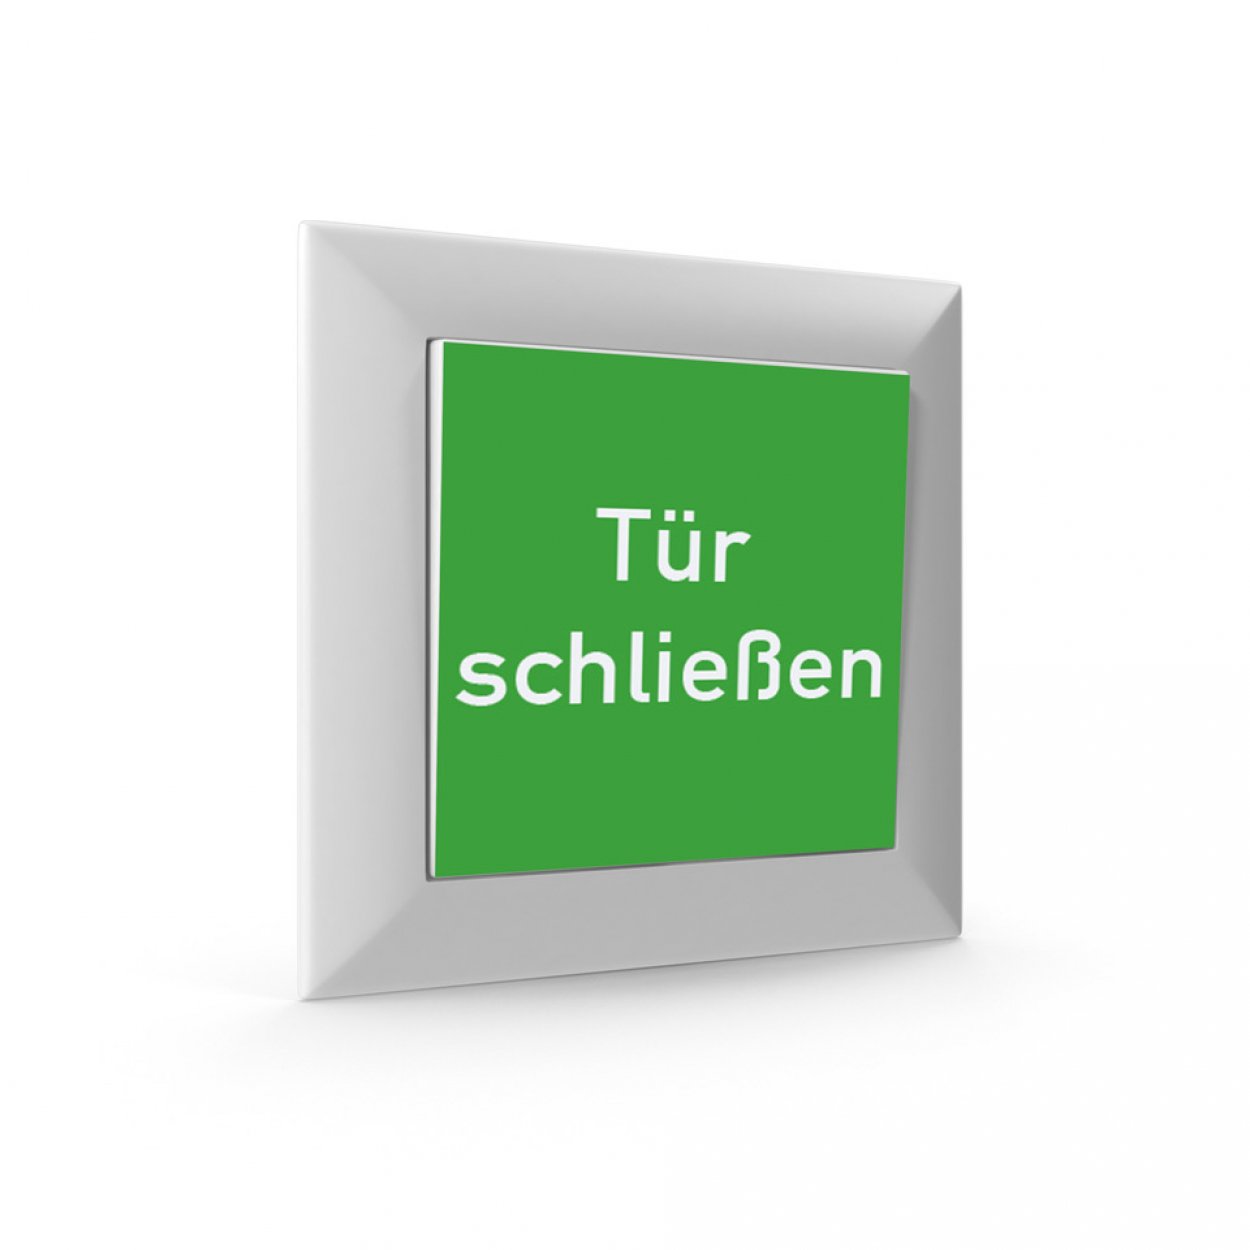 2 Stück Aufkleber für Taster Tür Schalter "Tür schließen" 52x52mm Folie grün made by MBS-SIGNS in Germany